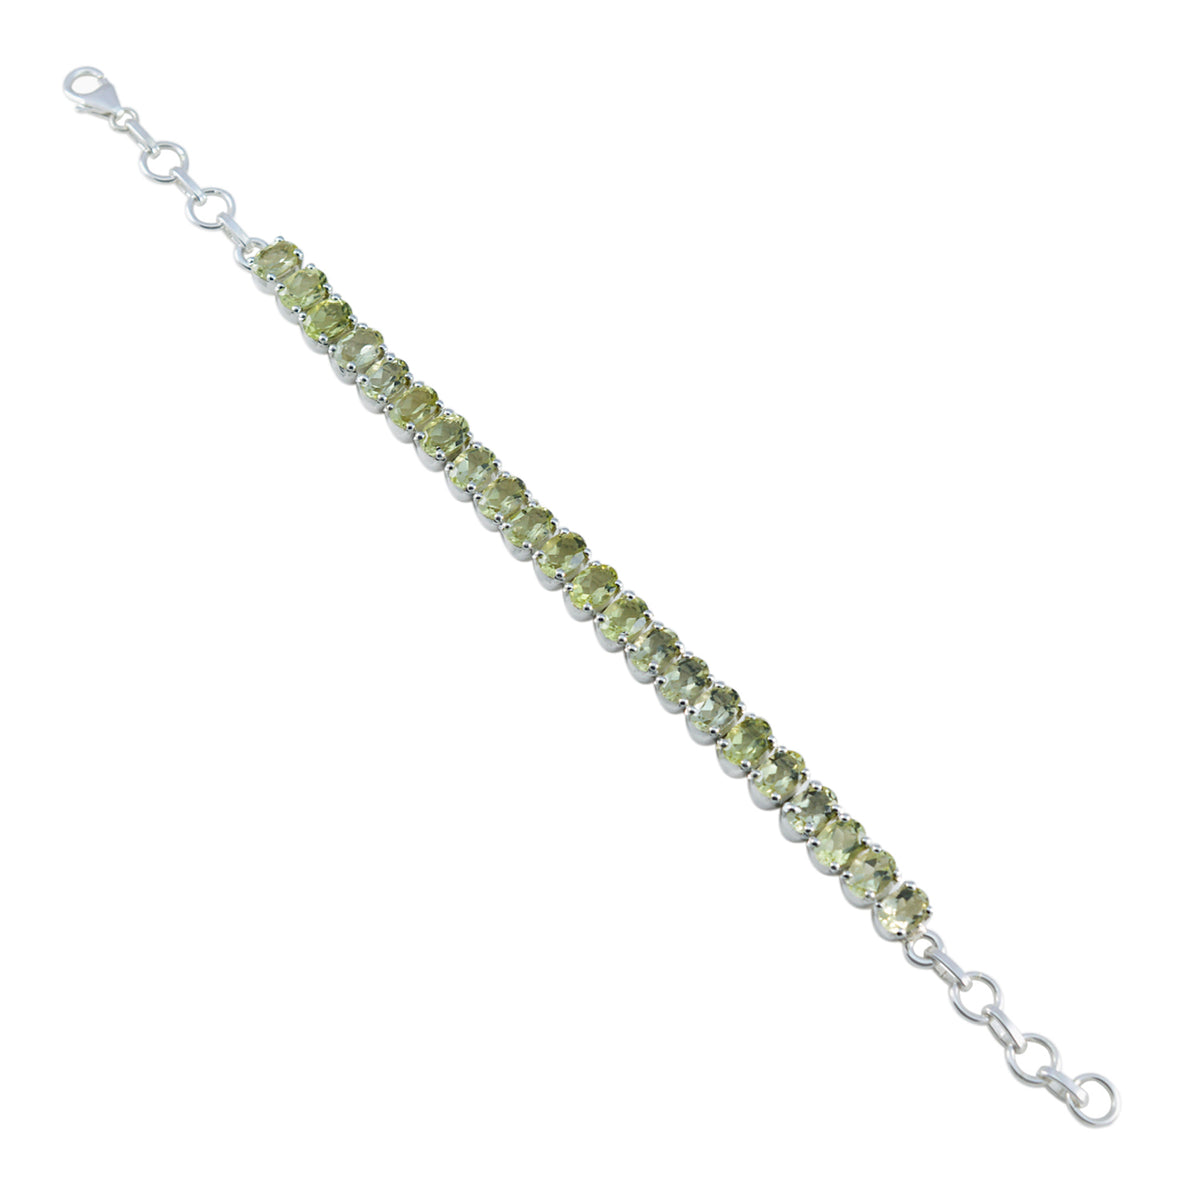 Riyo Custom 925 Sterling Silver Bracelet For Women's Lemon Quartz Bracelet Prong Setting Bracelet with Fish Hook Tennis Bracelet L Size 6-8.5 Inch.